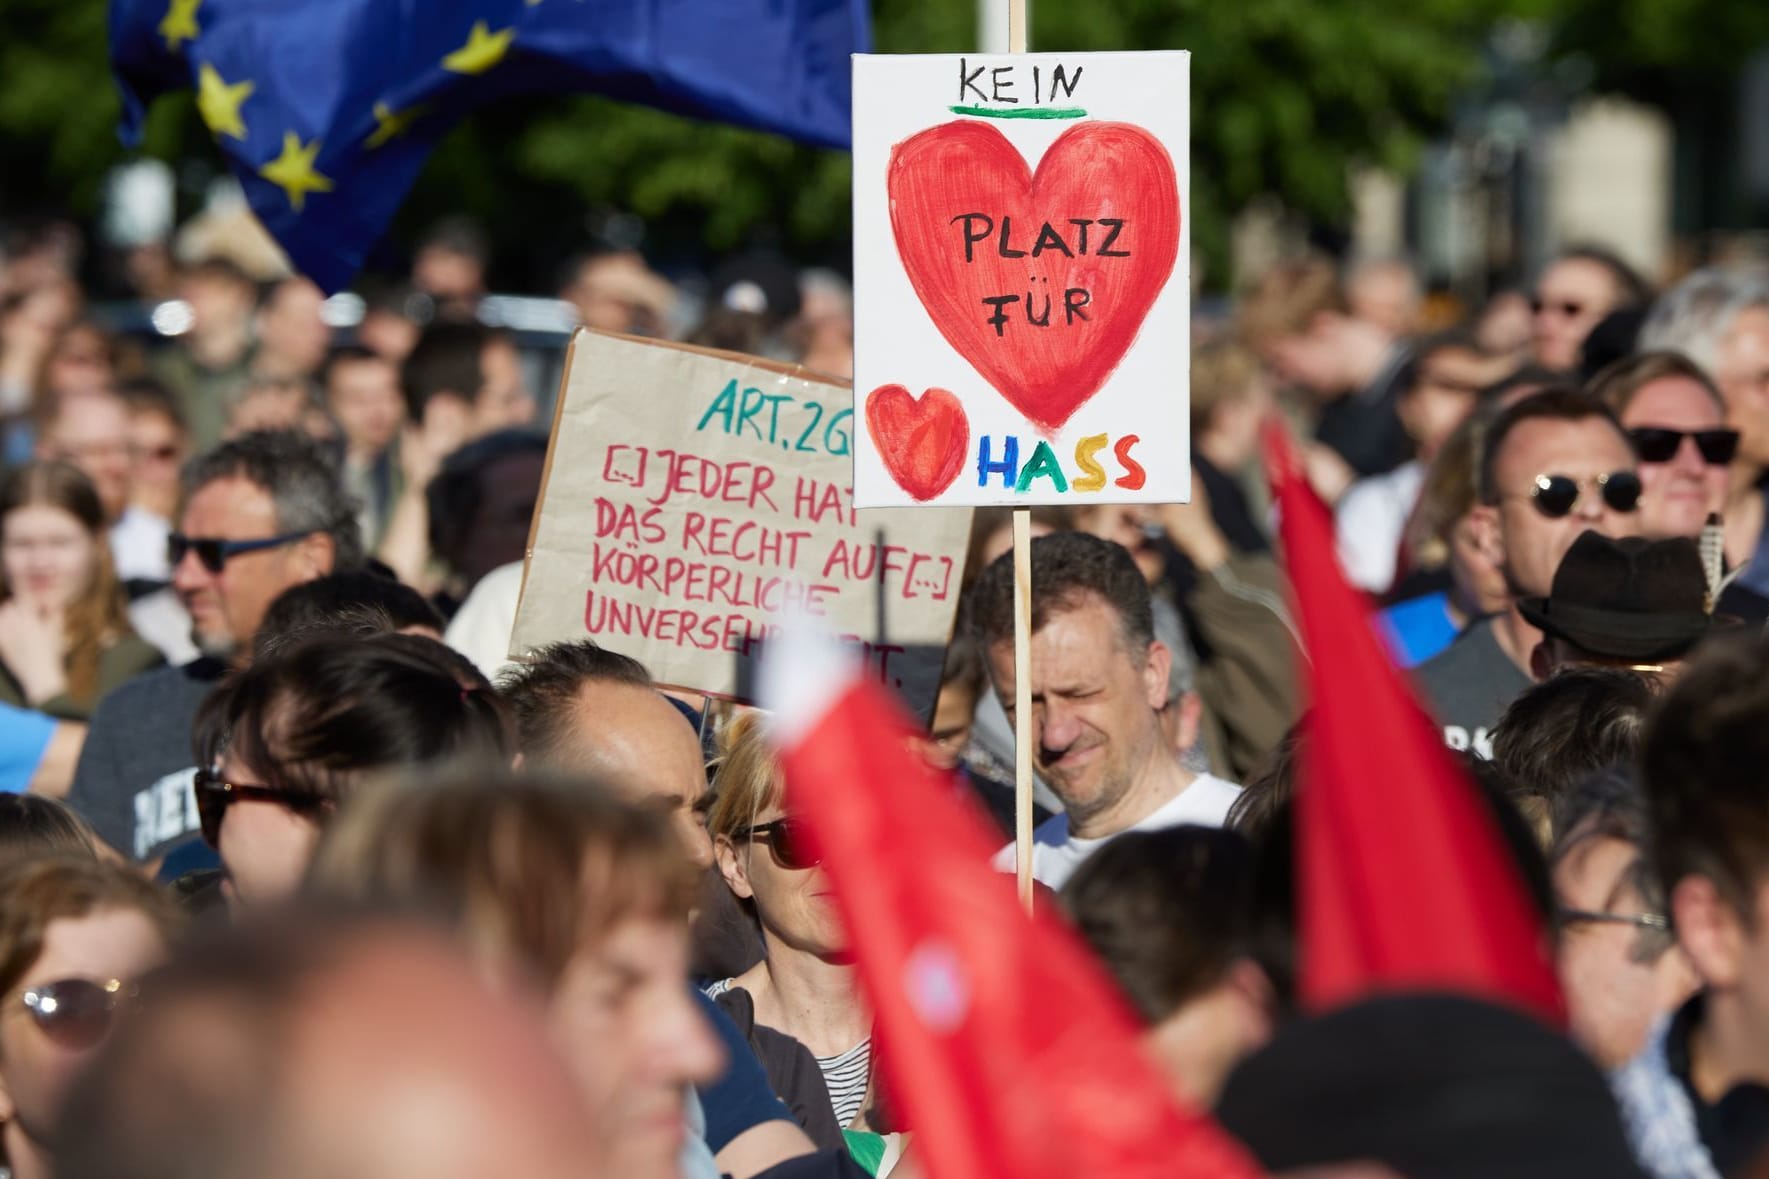 Nach dem Angriff auf den SPD-Europaabgeordneten Ecke fand vor dem Brandenburger Tor eine Solidaritätskundgebung statt.